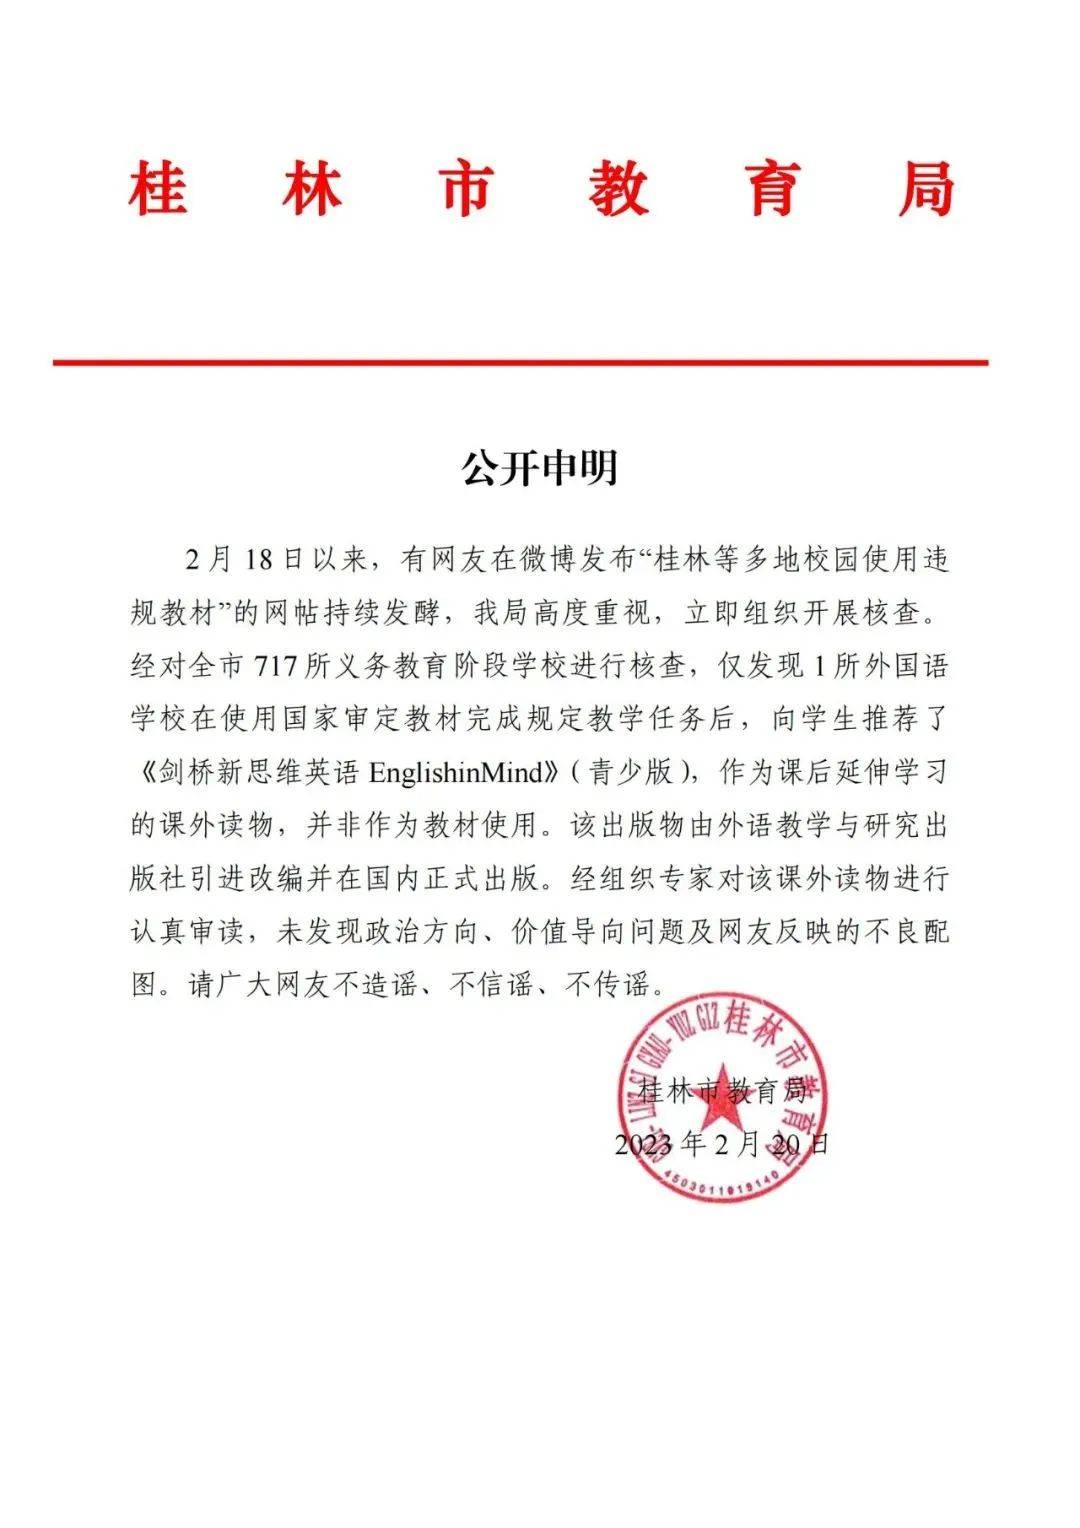 桂林出行网苹果版:网传“桂林多地校园使用违规教材”，官方回应